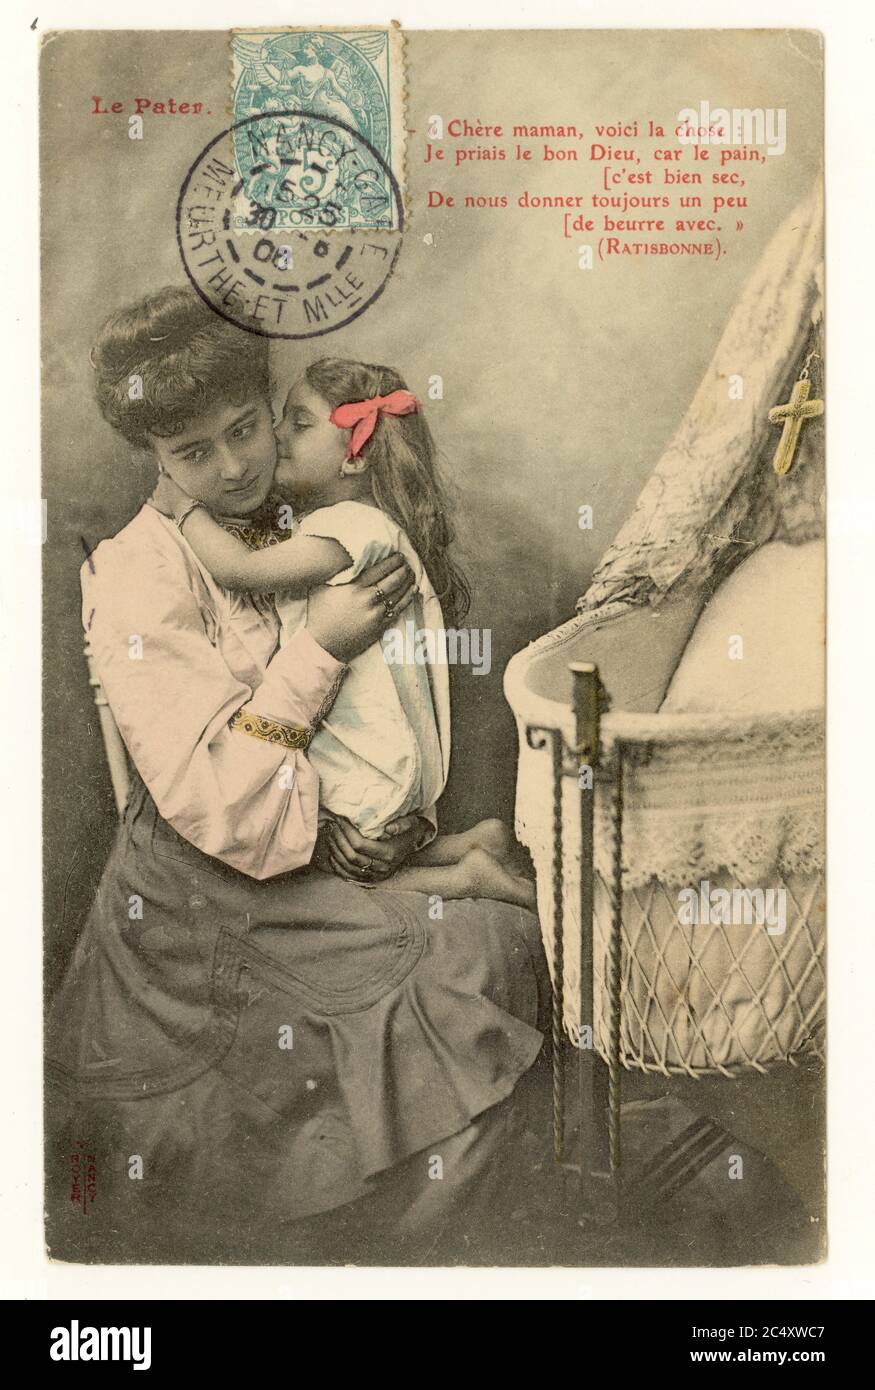 Charming inizio del 1900's francese sentimental Tinted saluti cartolina - madre e figlia giovane carina, accanto a culla, Ratisbonne citazione, timbro blu di fronte all'immagine, Francia, pubblicato il 1906 agosto. Foto Stock